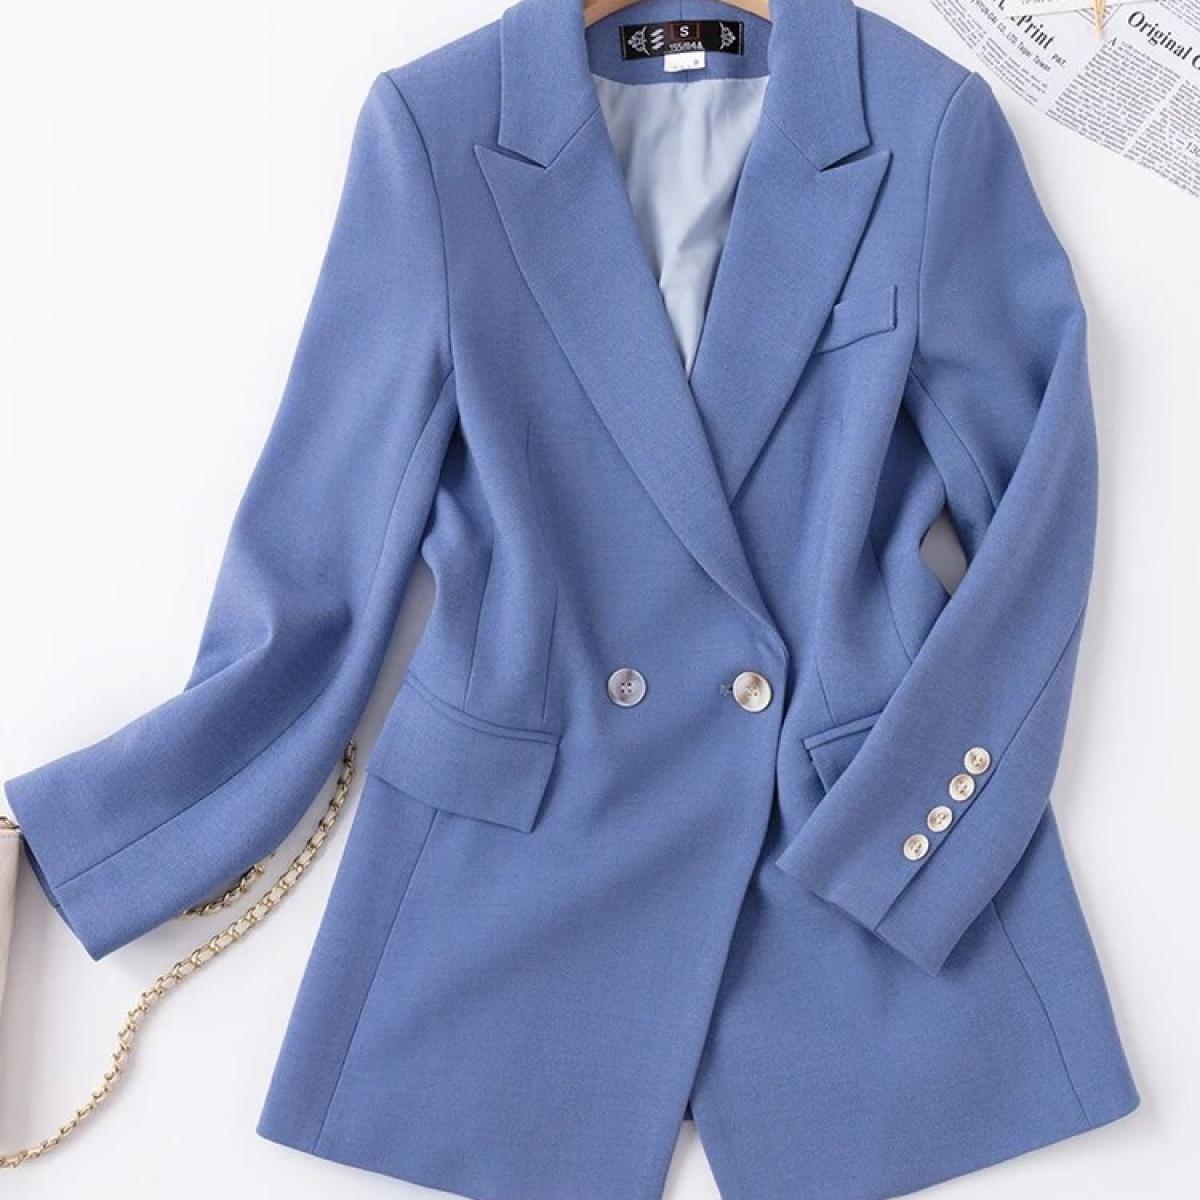 Alta qualidade azul senhoras blazer jaqueta feminina sólida manga longa único breasted trabalho de negócios wear casaco formal